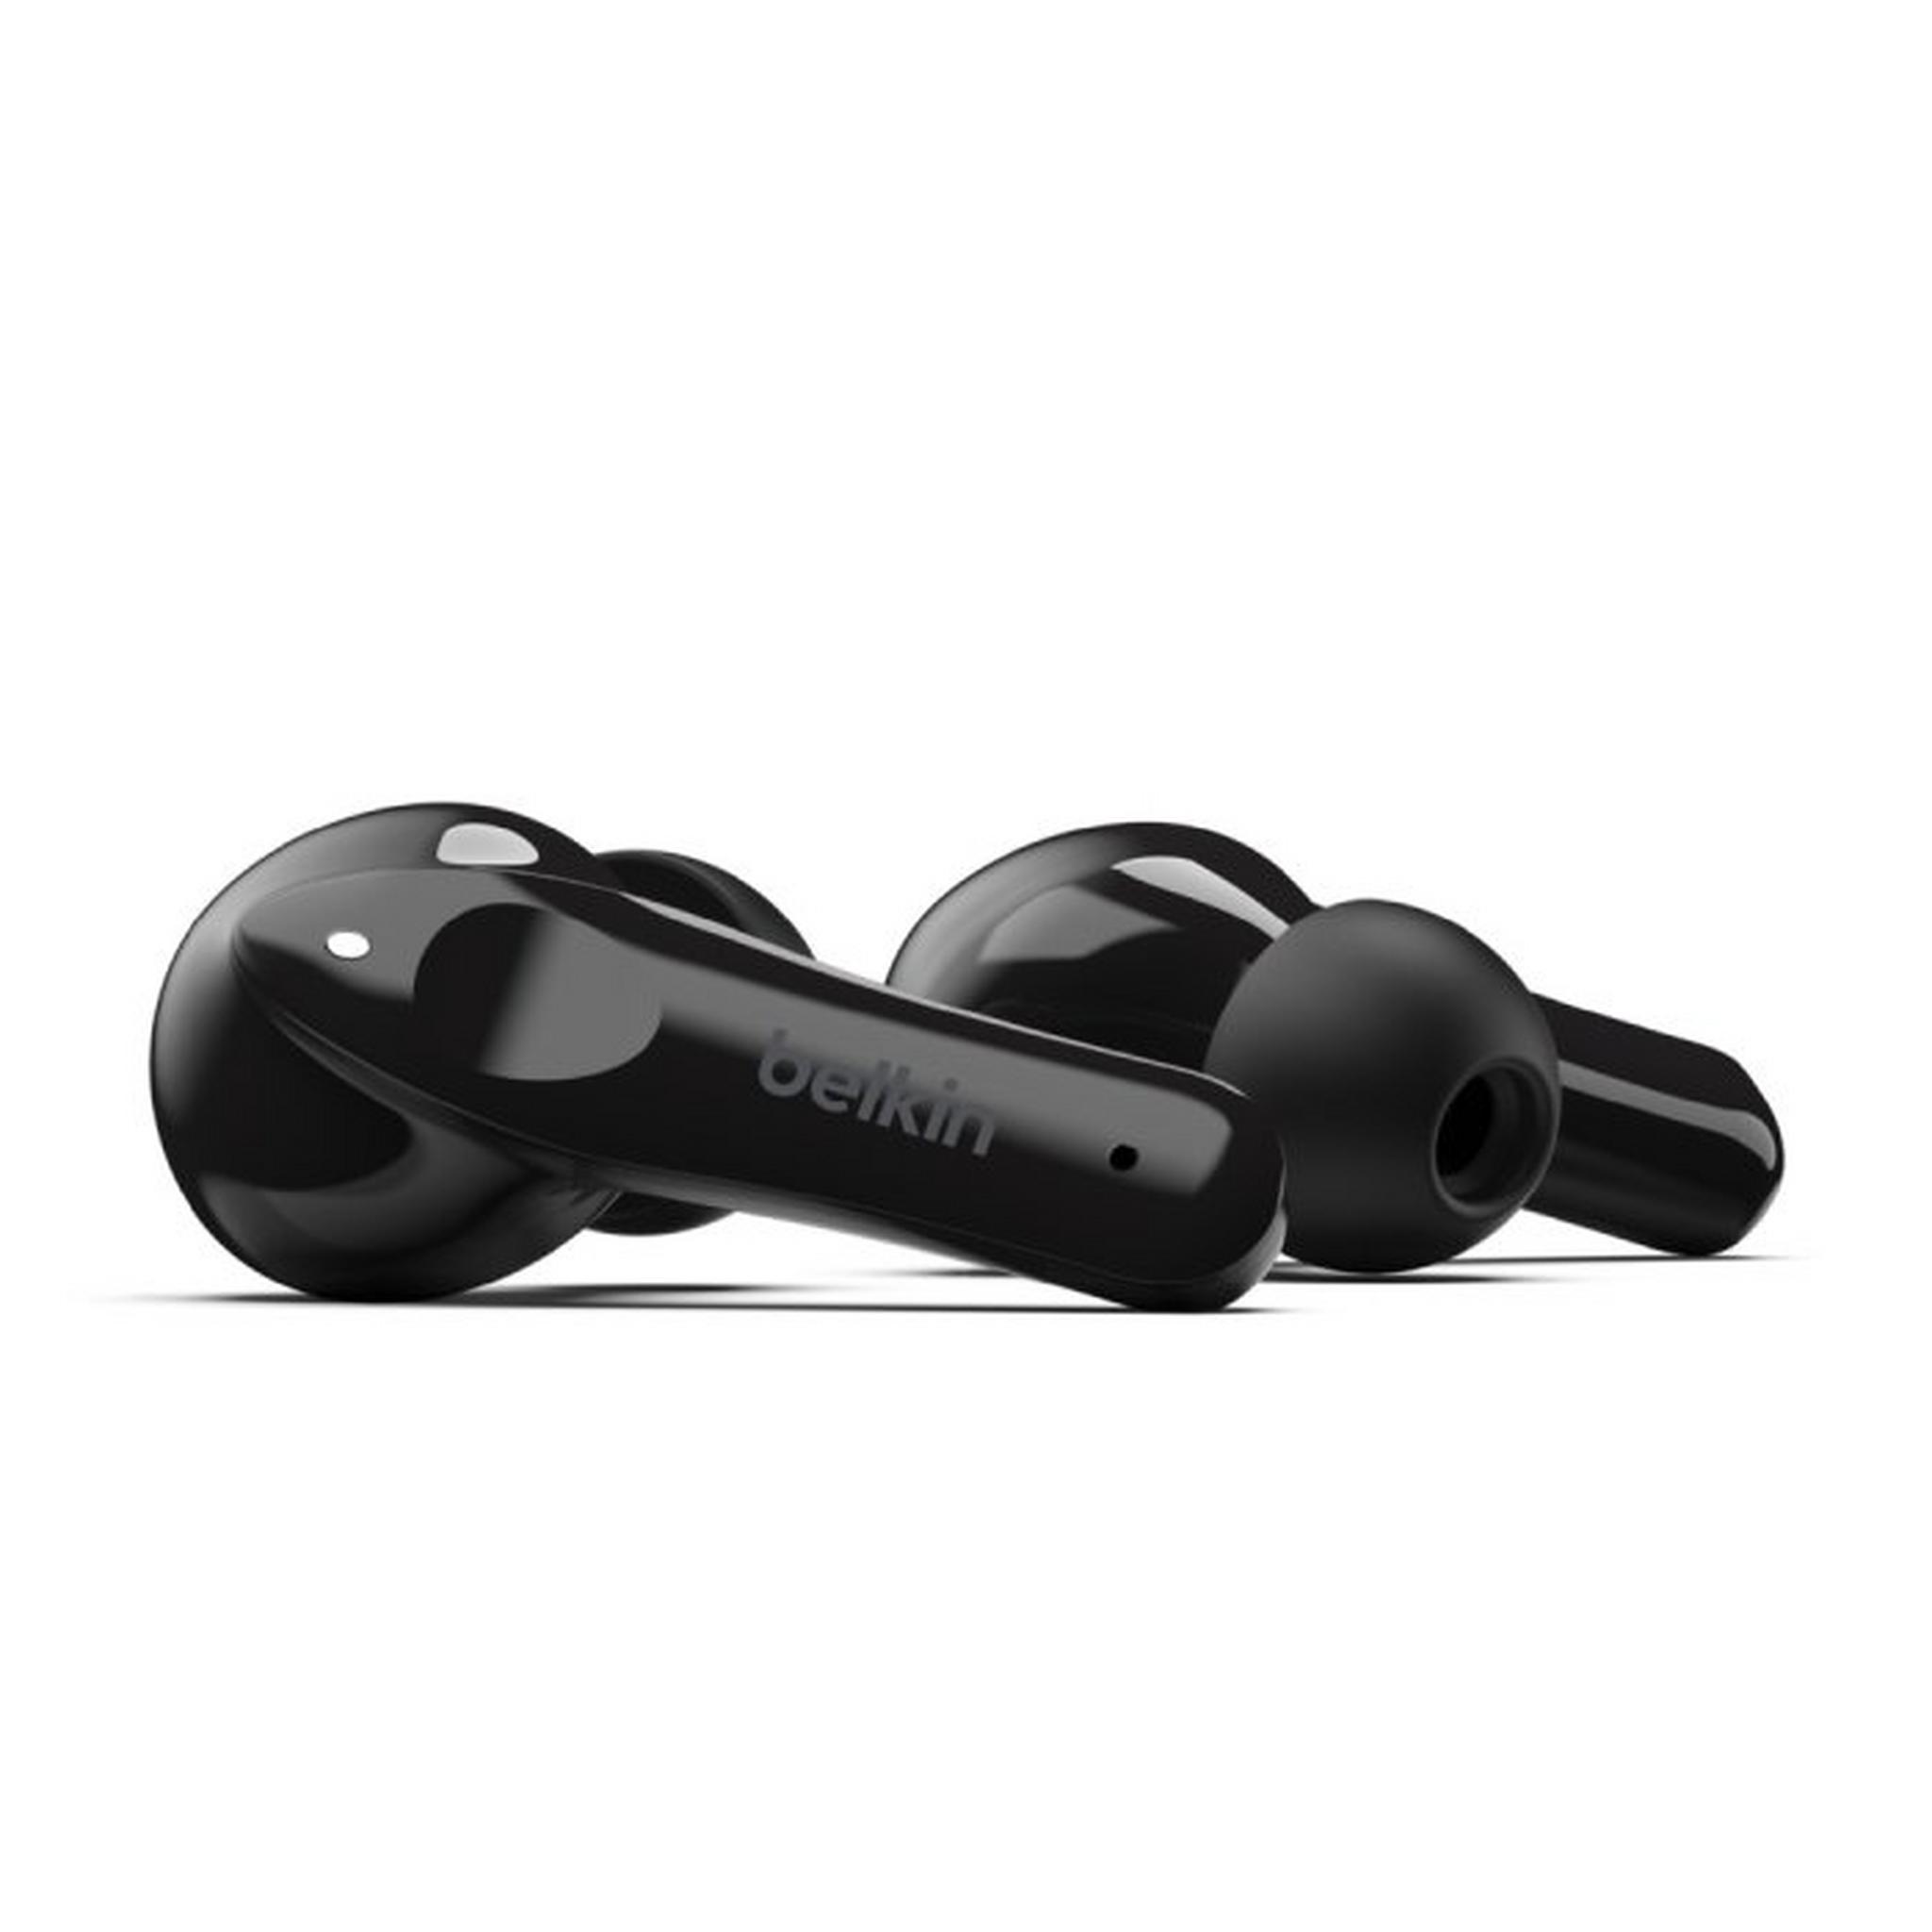 Belkin SoundForm Move Plus True Wireless Earbuds - Black